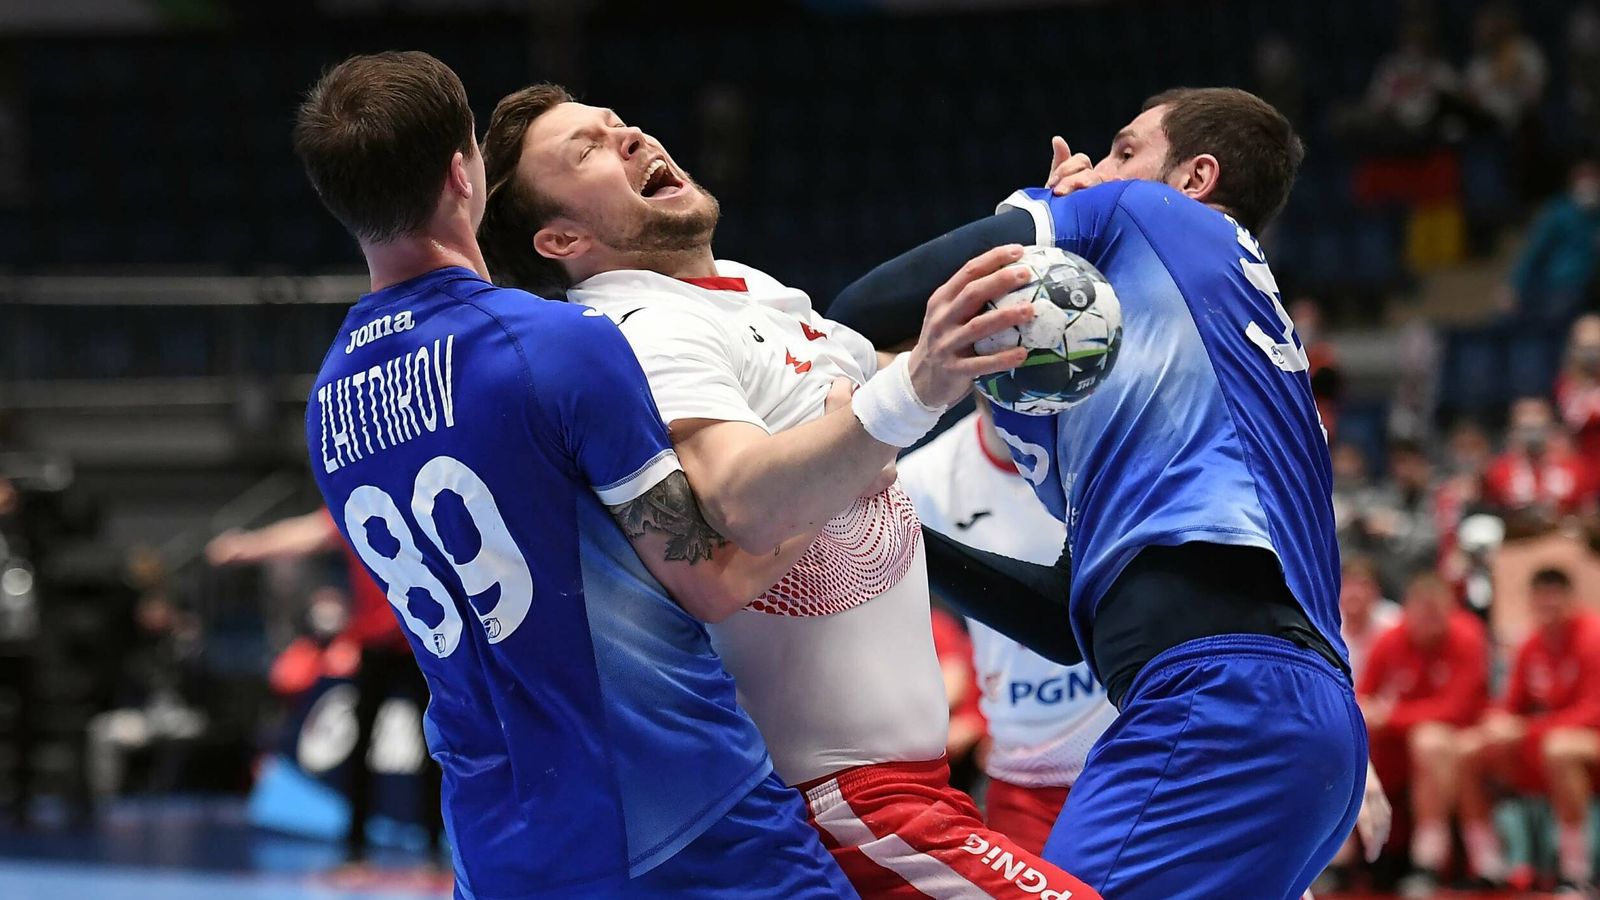 Handball EM News: Polska traci wyrównanie w ostatniej sekundzie |  wiadomości o piłce ręcznej